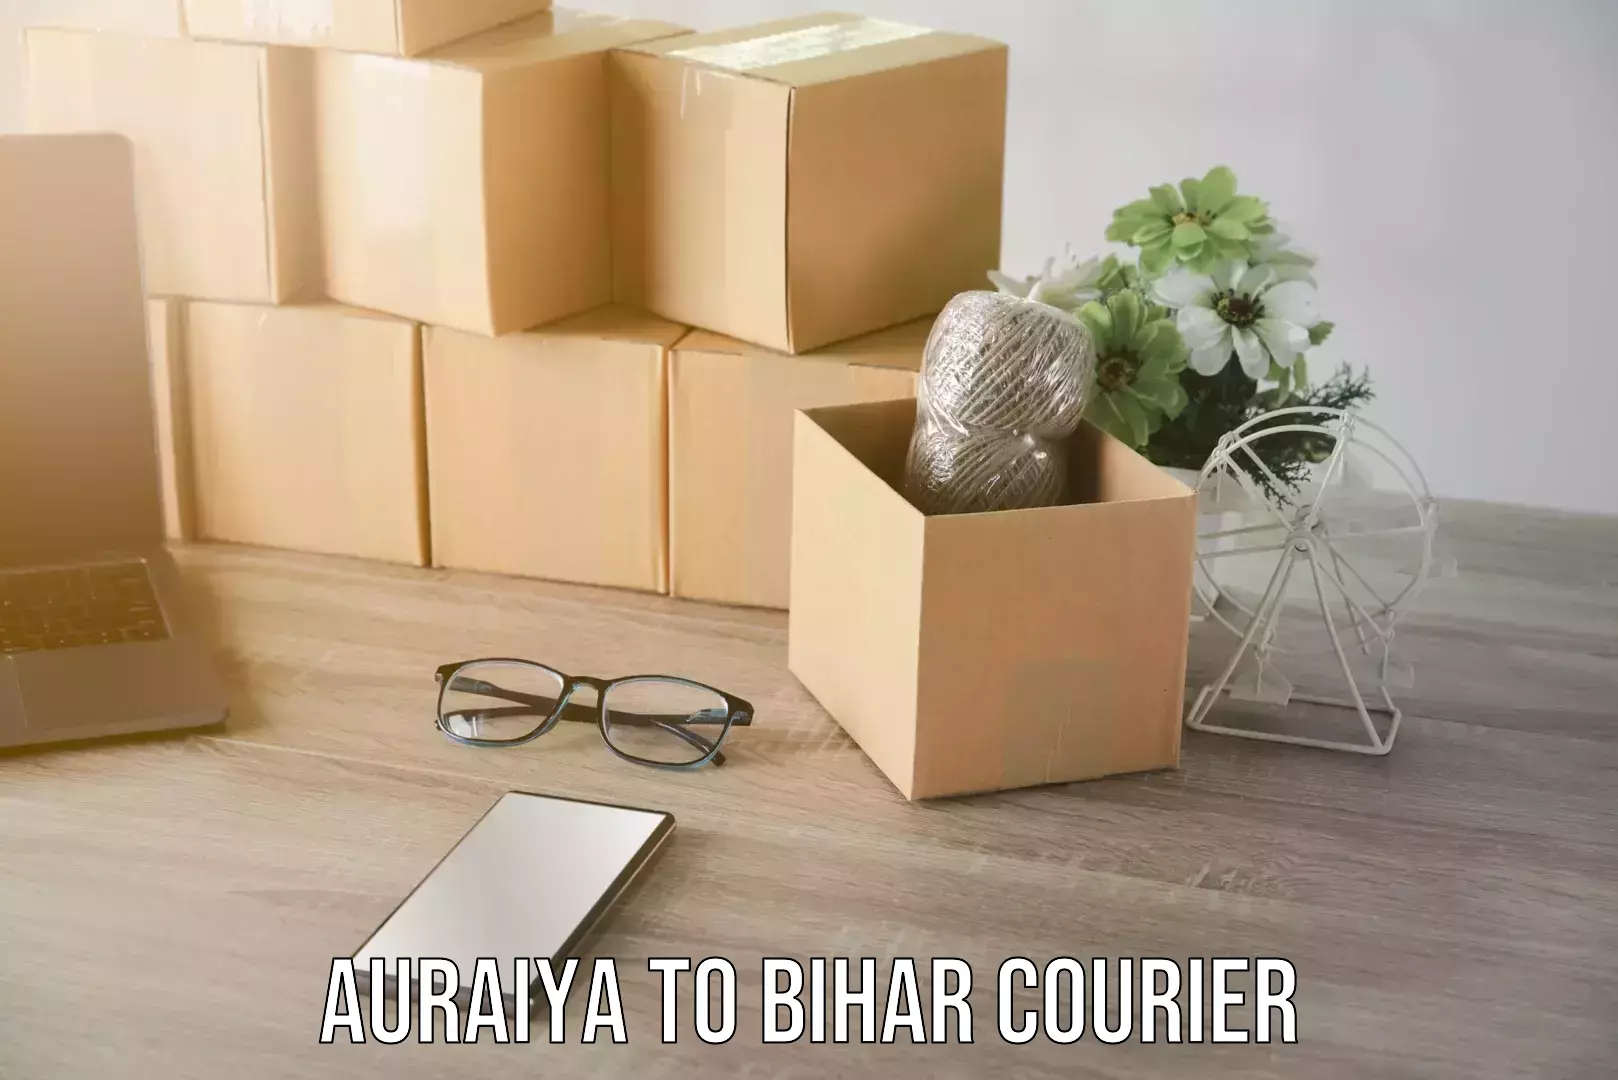 Speedy delivery service Auraiya to Bihar